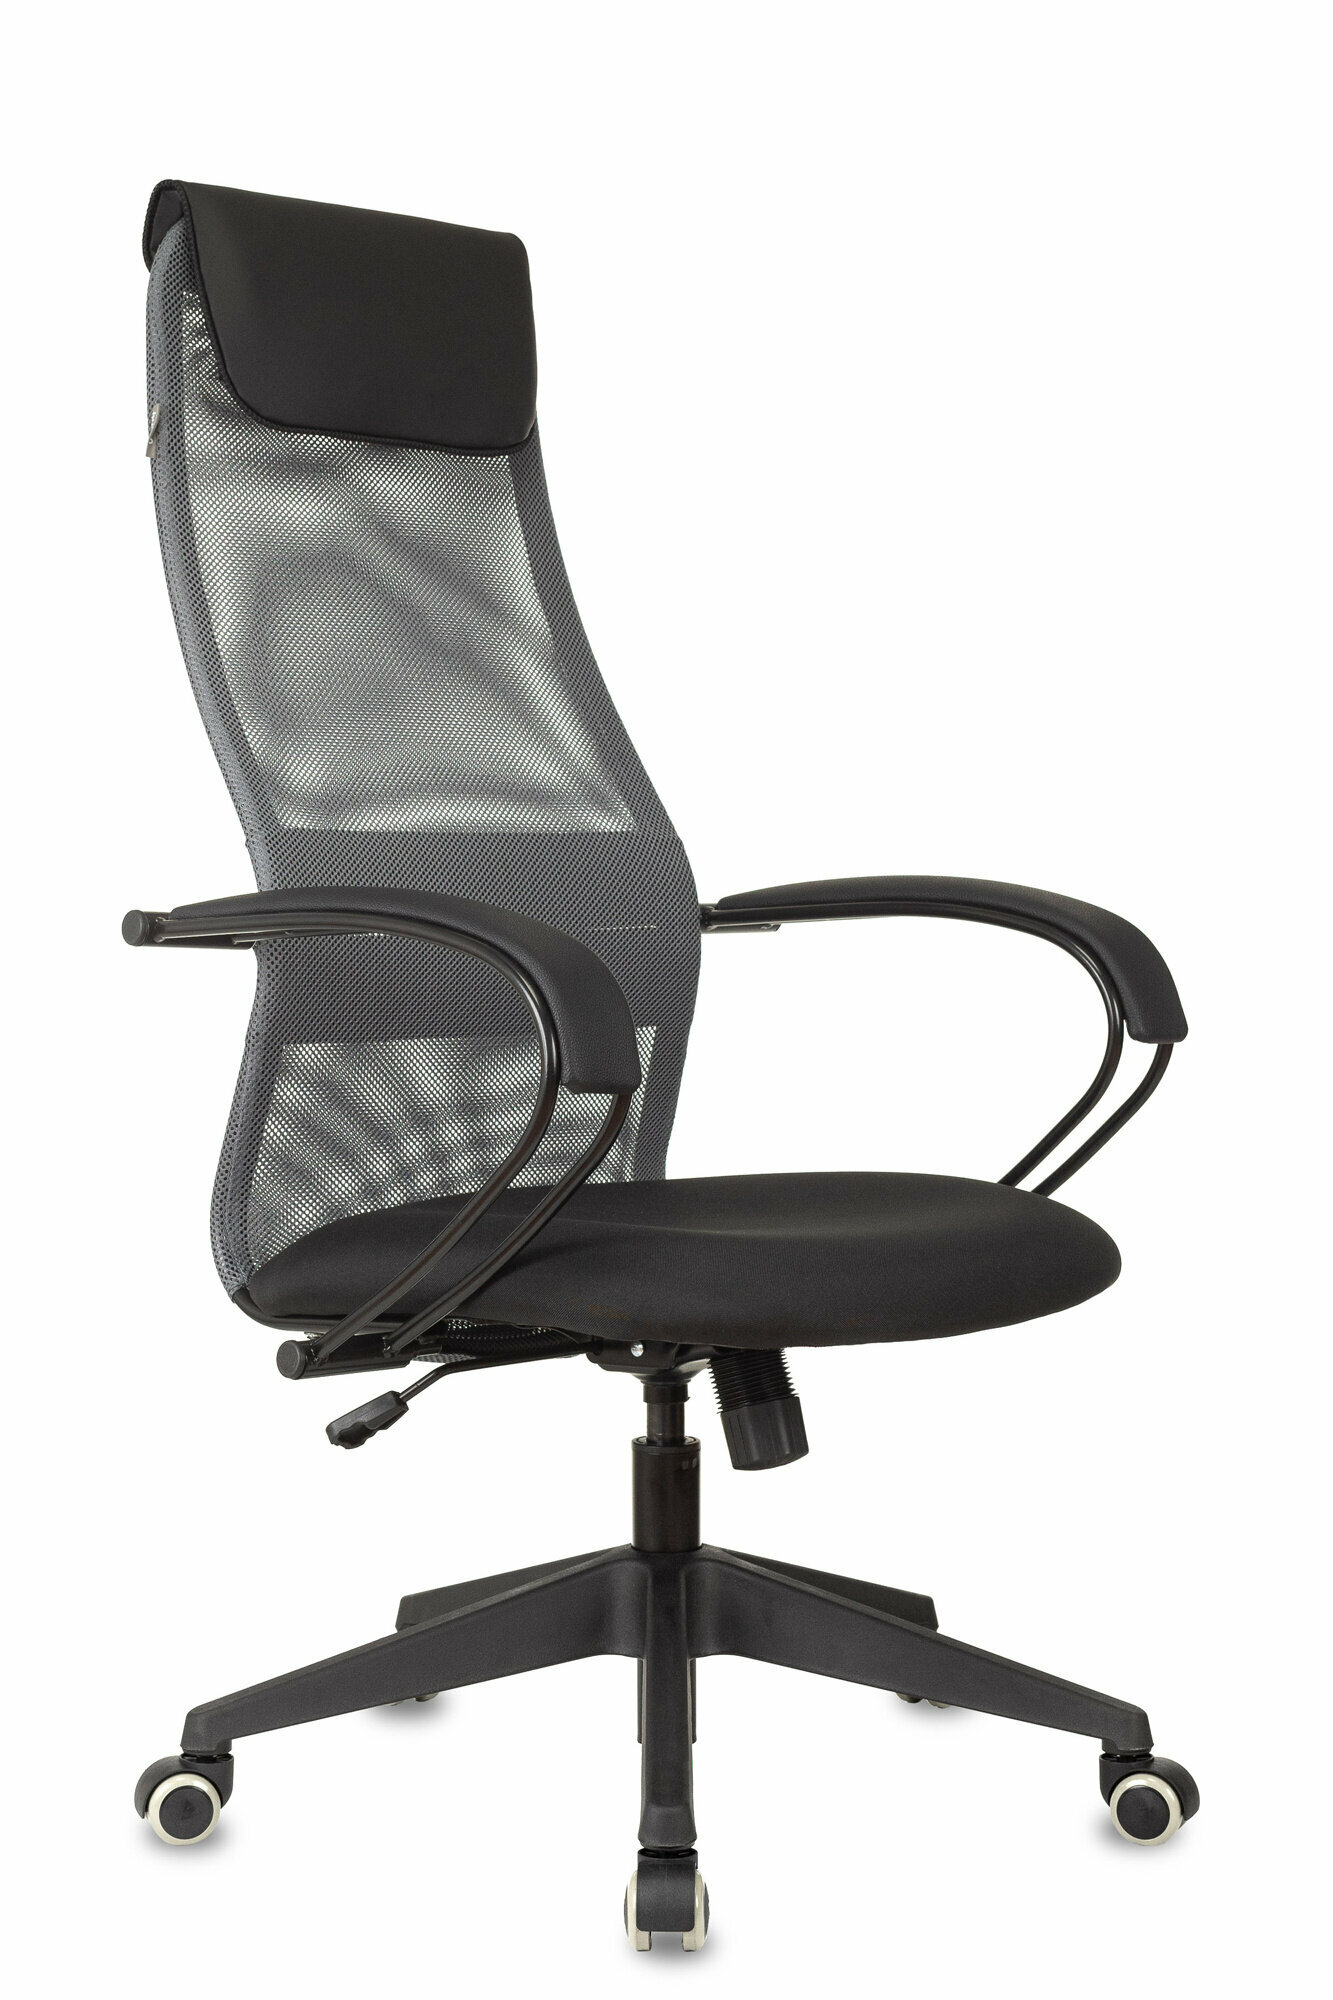 Кресло руководителя CH-607 темно-серый/черный сетка/ткань с подголов. крестов. пластик / Компьютерное кресло для директора, начальника, менеджера